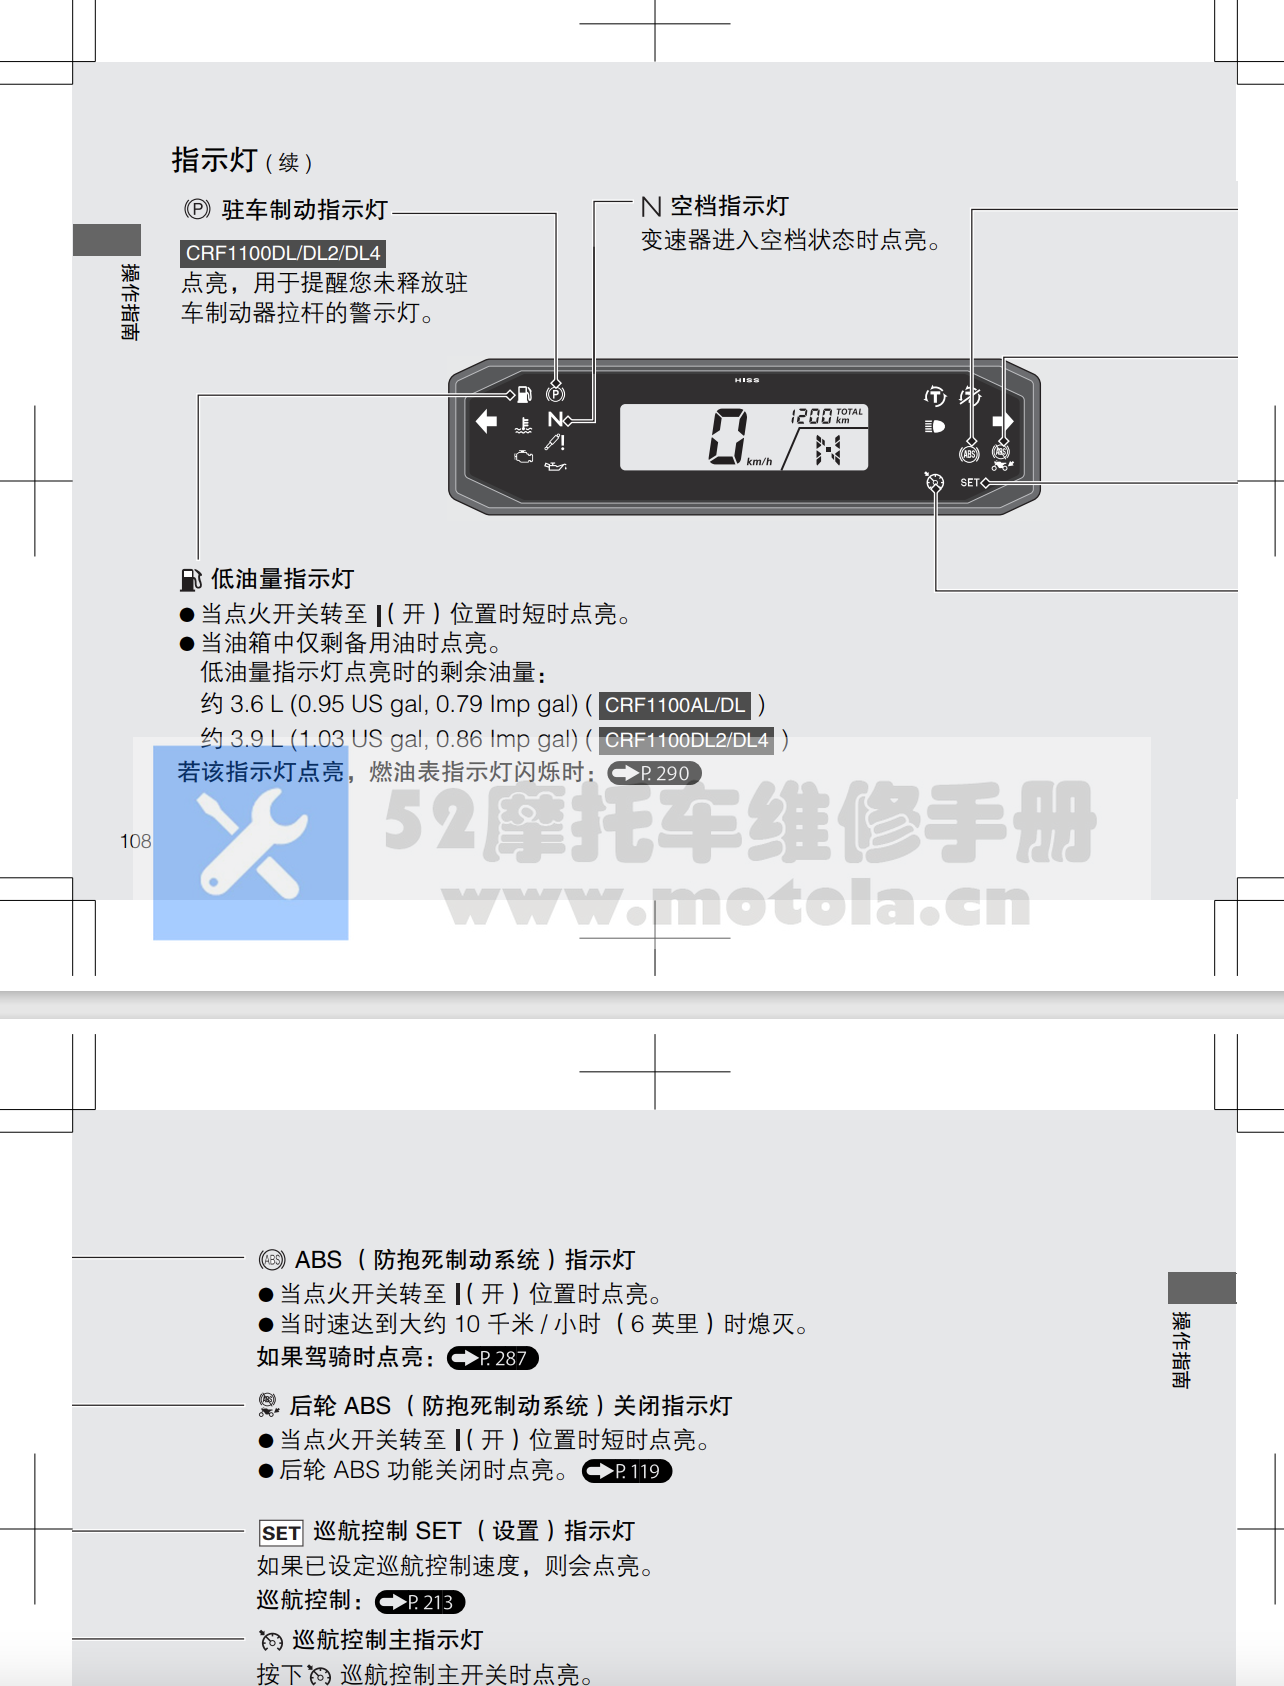 本田CRF1100用户手册插图2